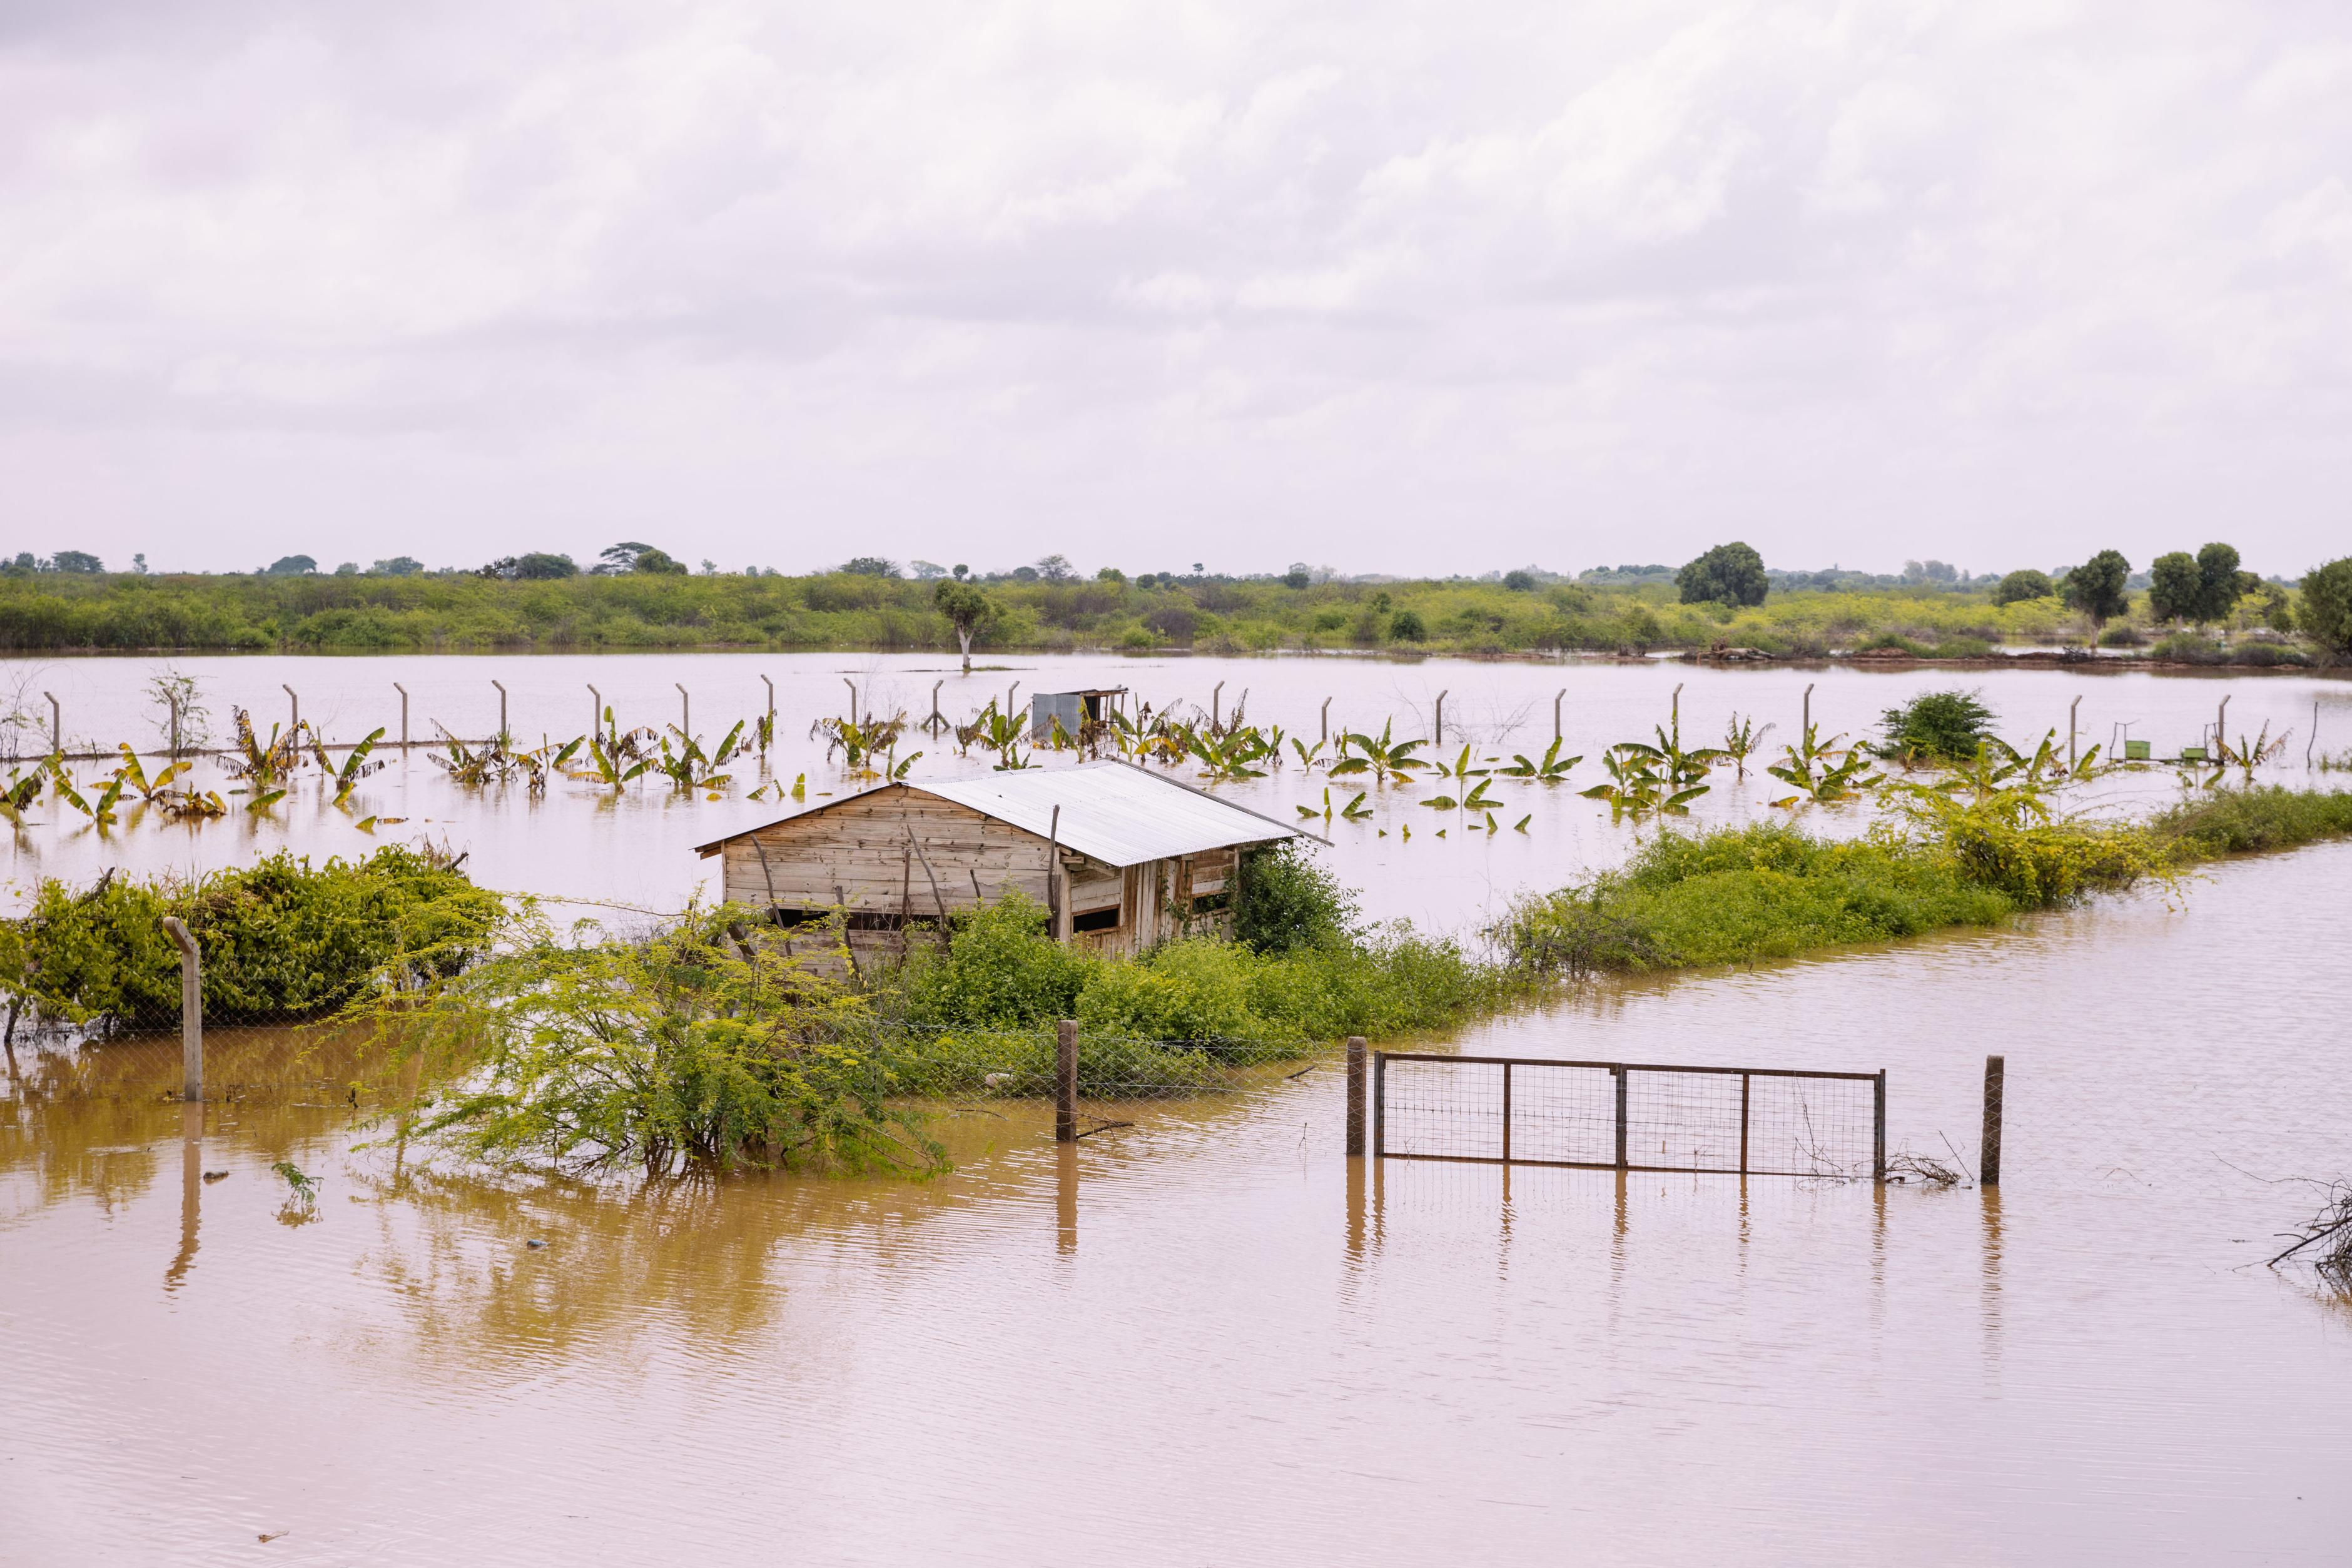 Eine landwirtschaftliche Fläche mit Palmen und einer Hütte steht unter Wasser